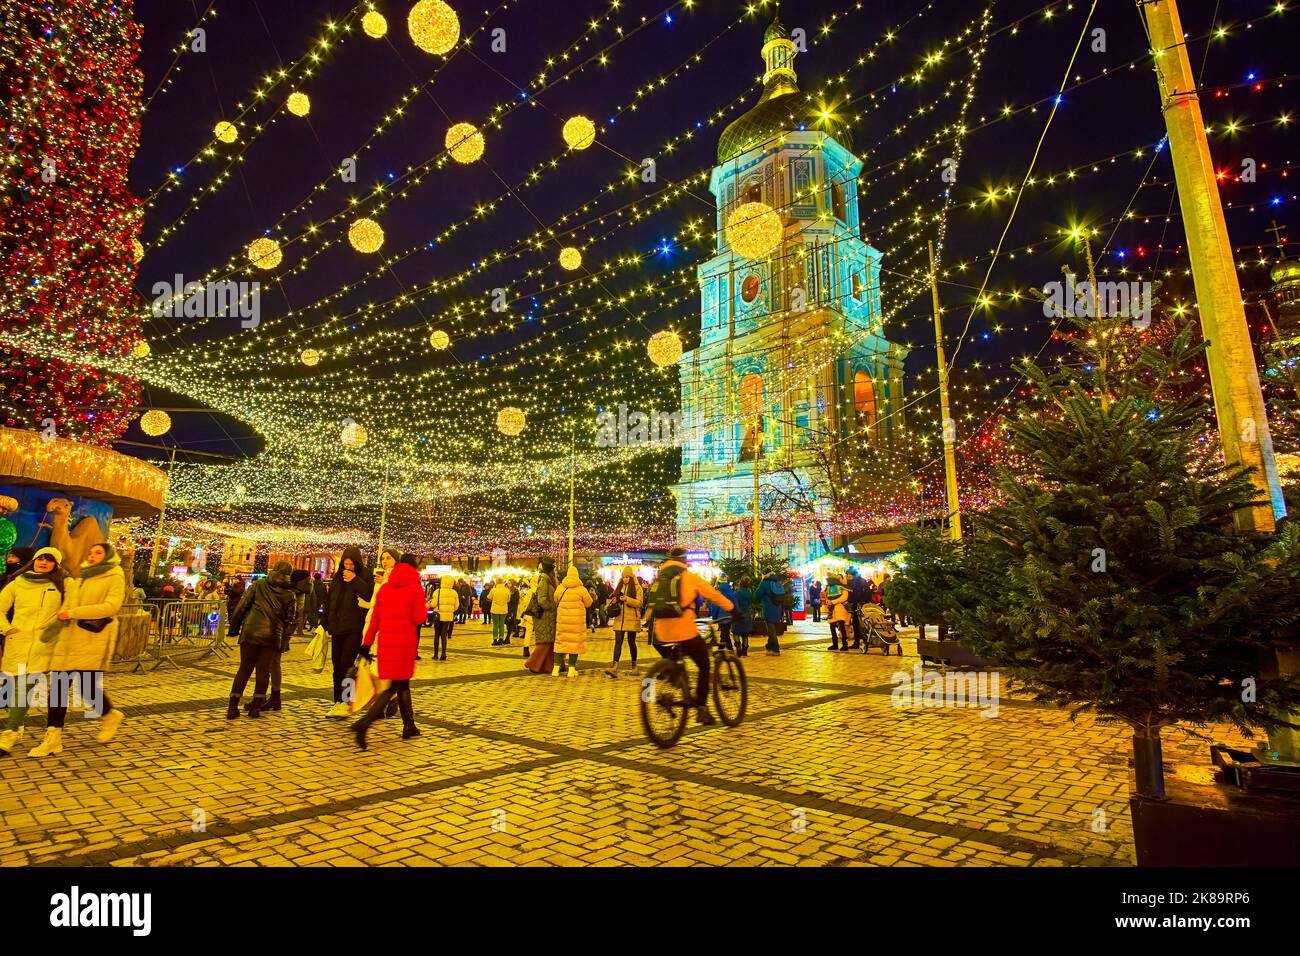 KIEV, UCRANIA - 28 DE DICIEMBRE de 2021: El árbol de Navidad principal y el campanario de la Catedral de Santa Sofía, el 28 de diciembre en Kiev, Ucrania Foto de stock